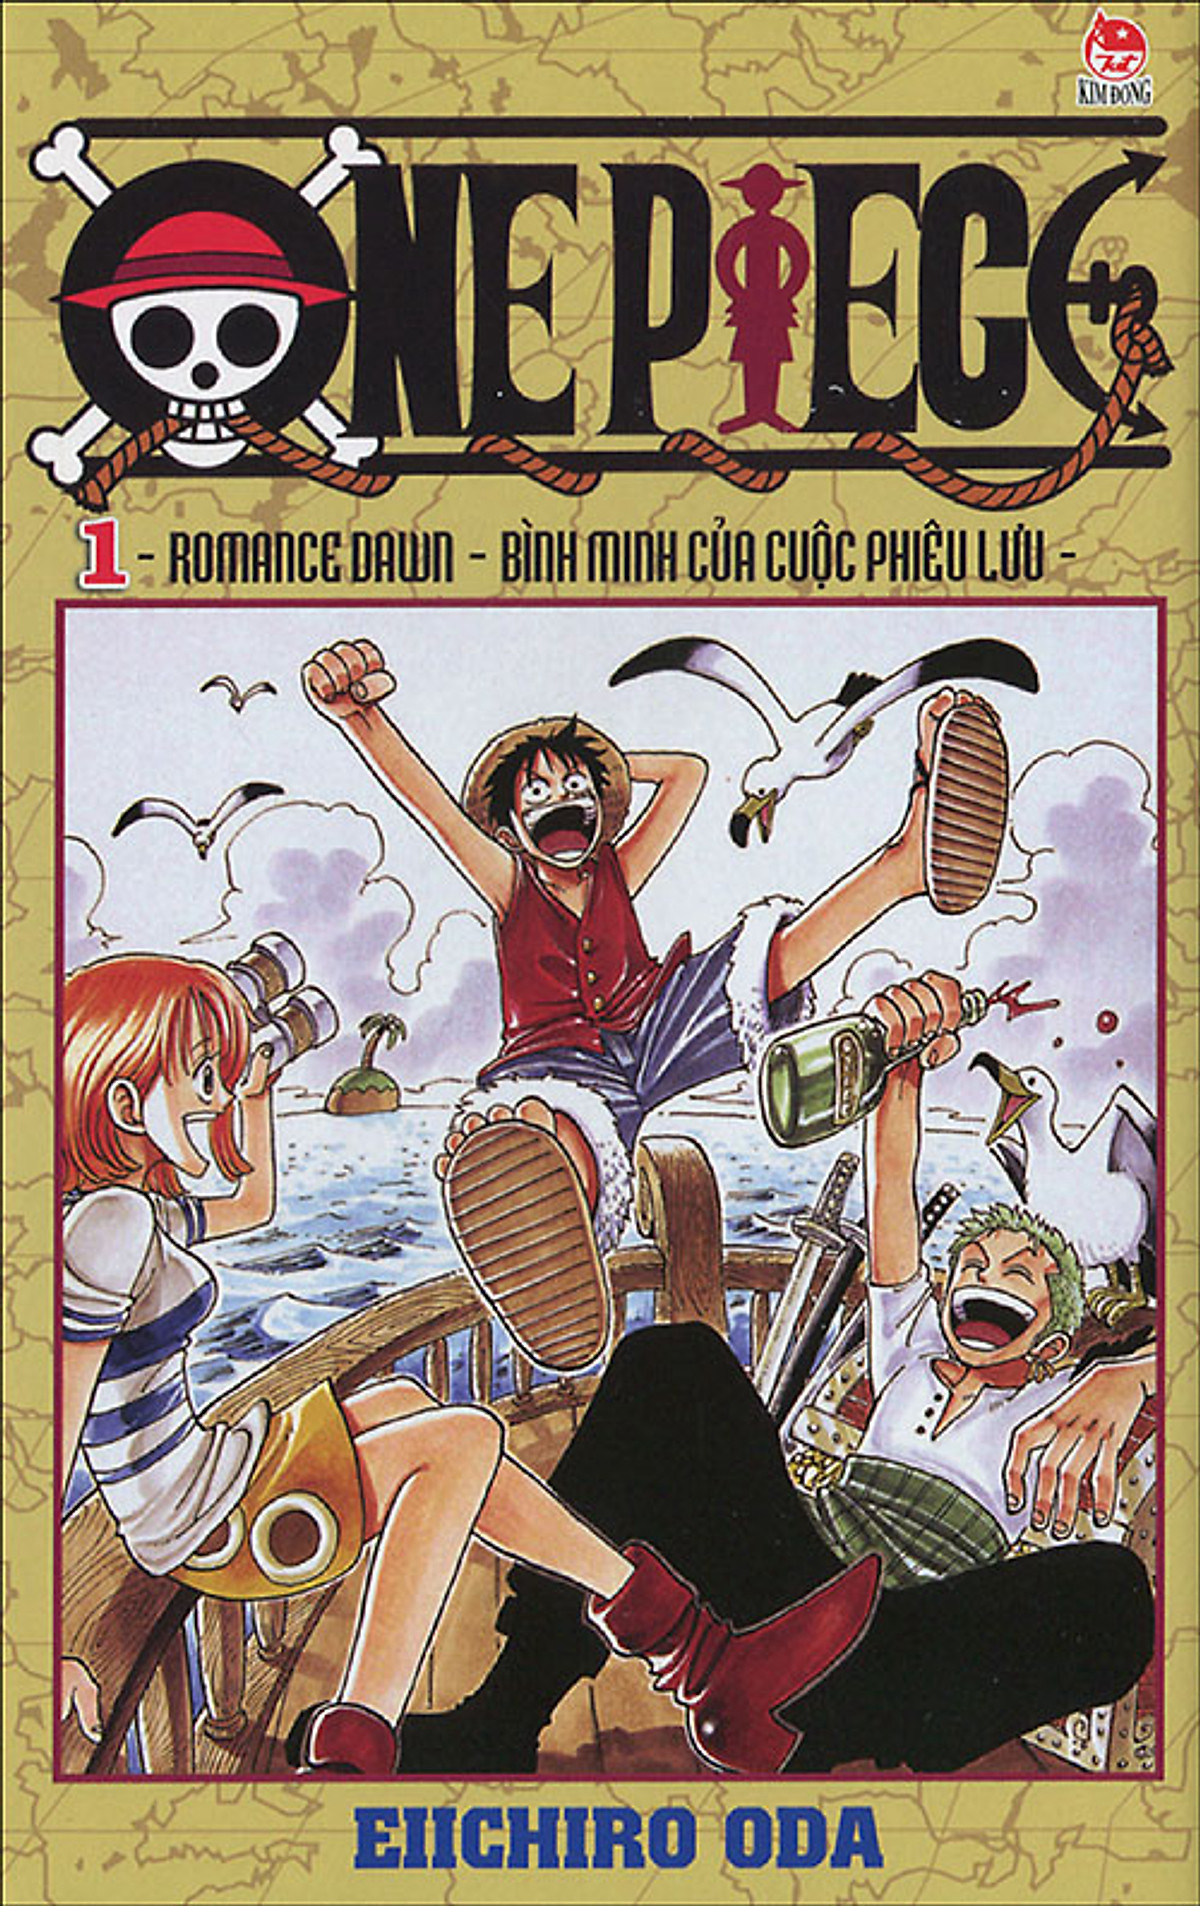 Xem Phim Đảo Hải Tặc - One Piece (1999) - online truc tuyen vietsub mien phi hinh anh 0